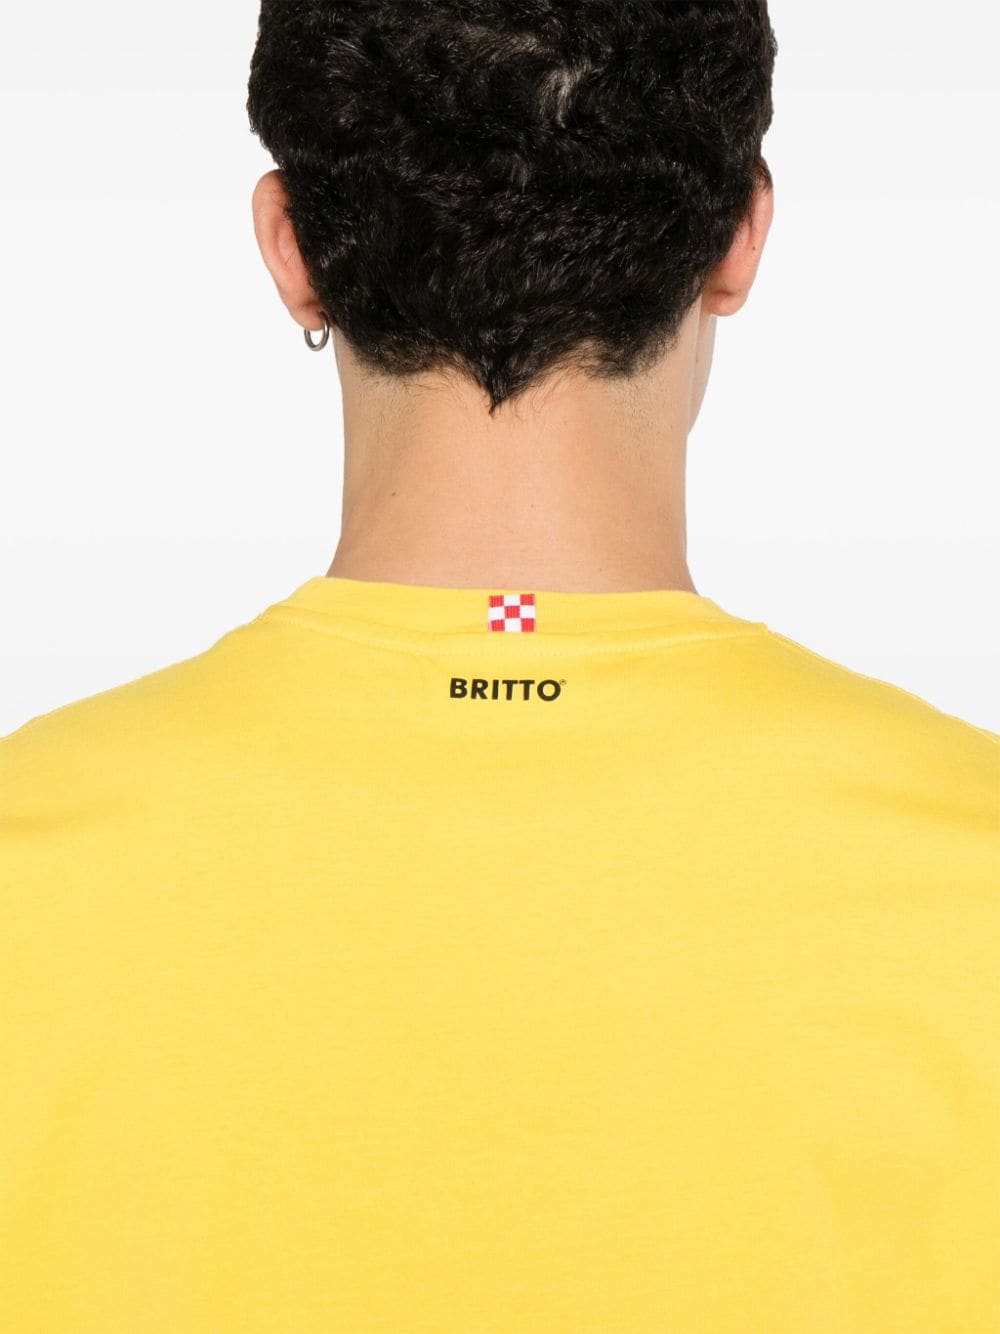 Britto Miami t-shirt